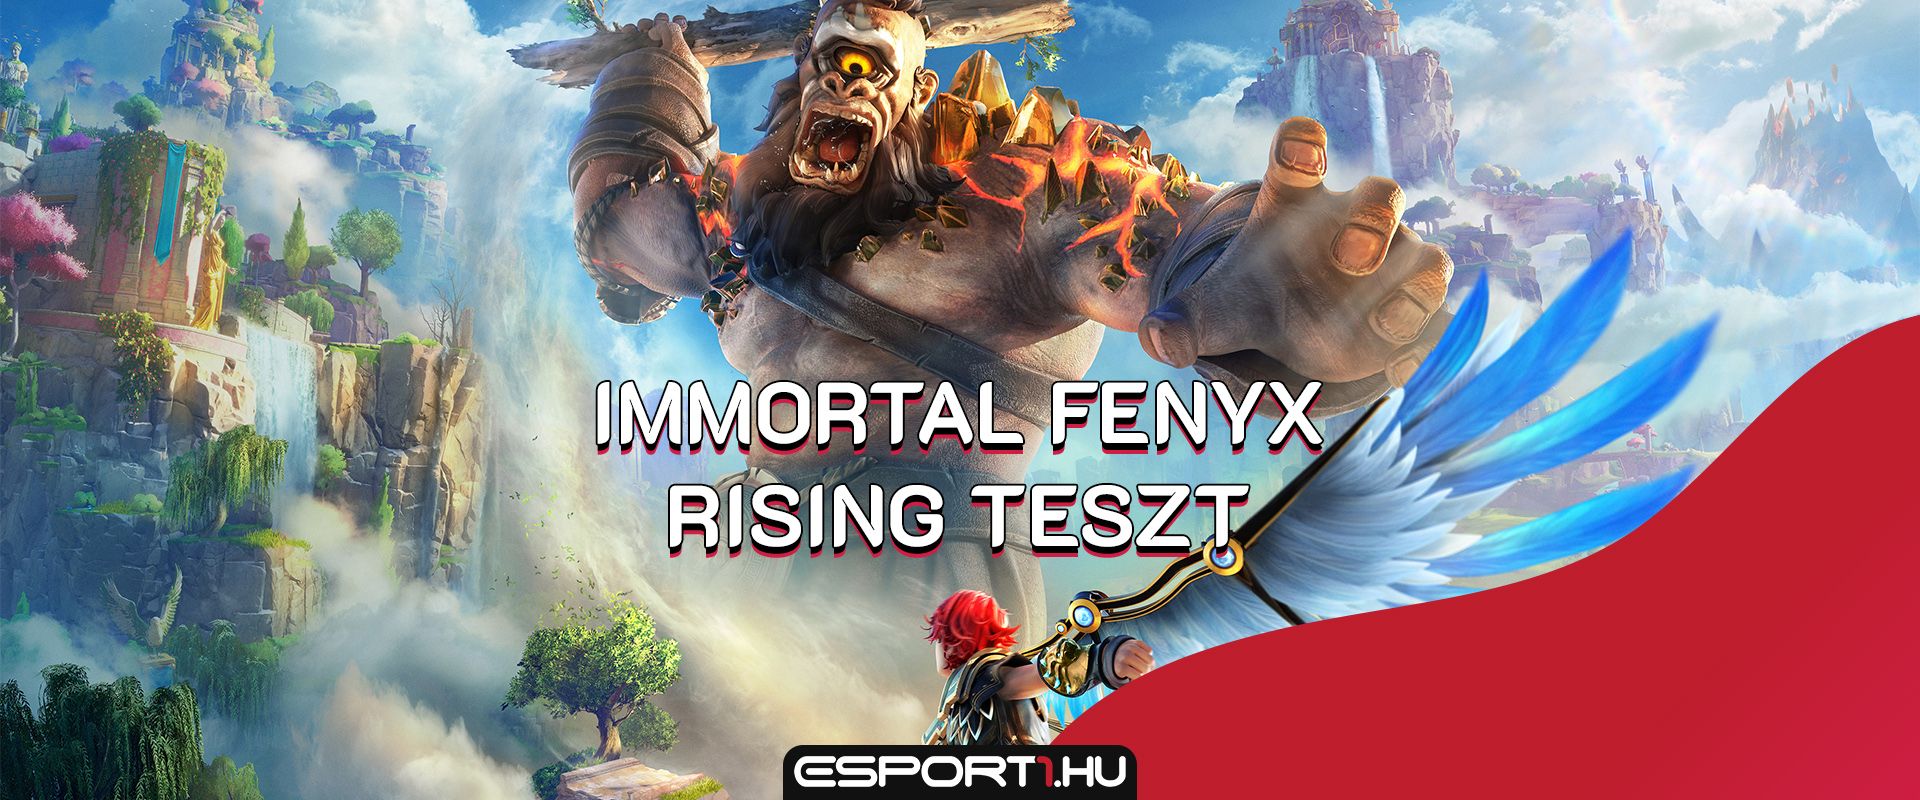 Immortal Fenyx Rising teszt - Halandóként az istenek birodalmában